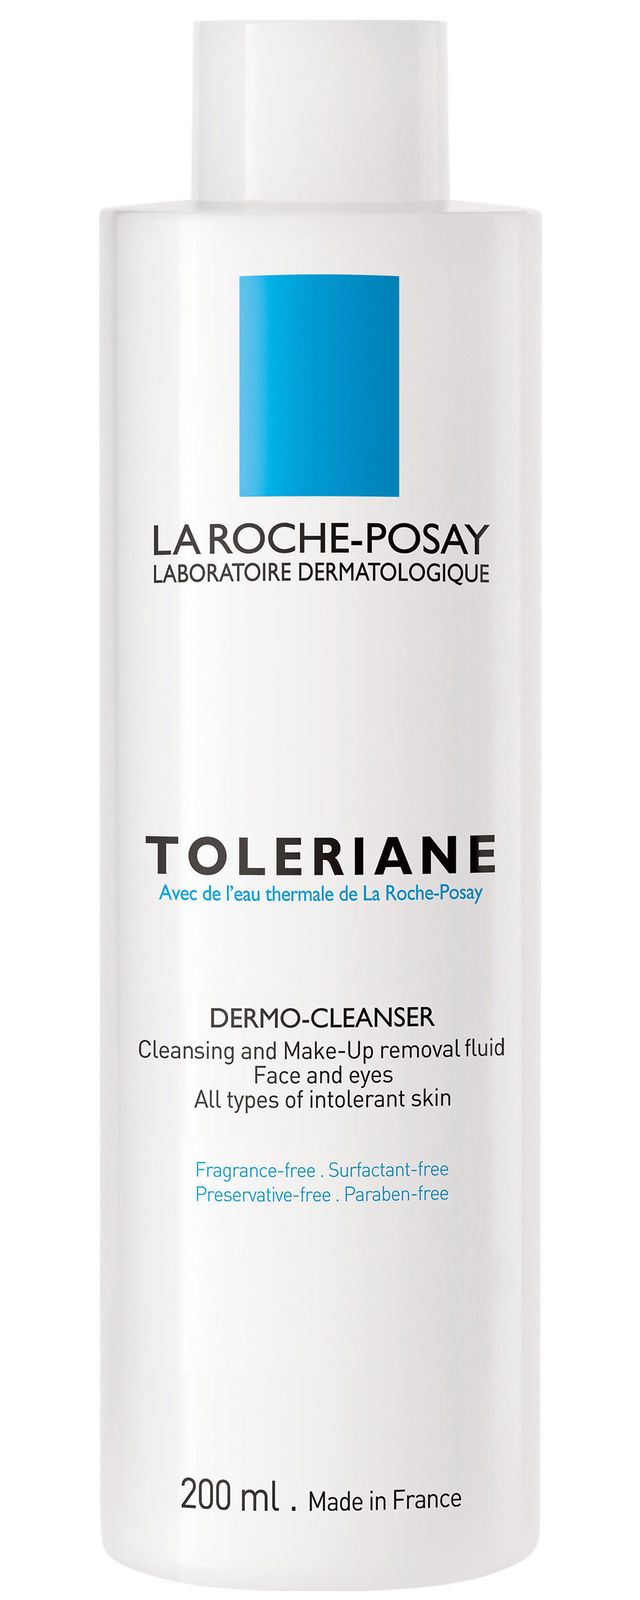 La Roche-Posay Toleriane Dermo-Cleanser